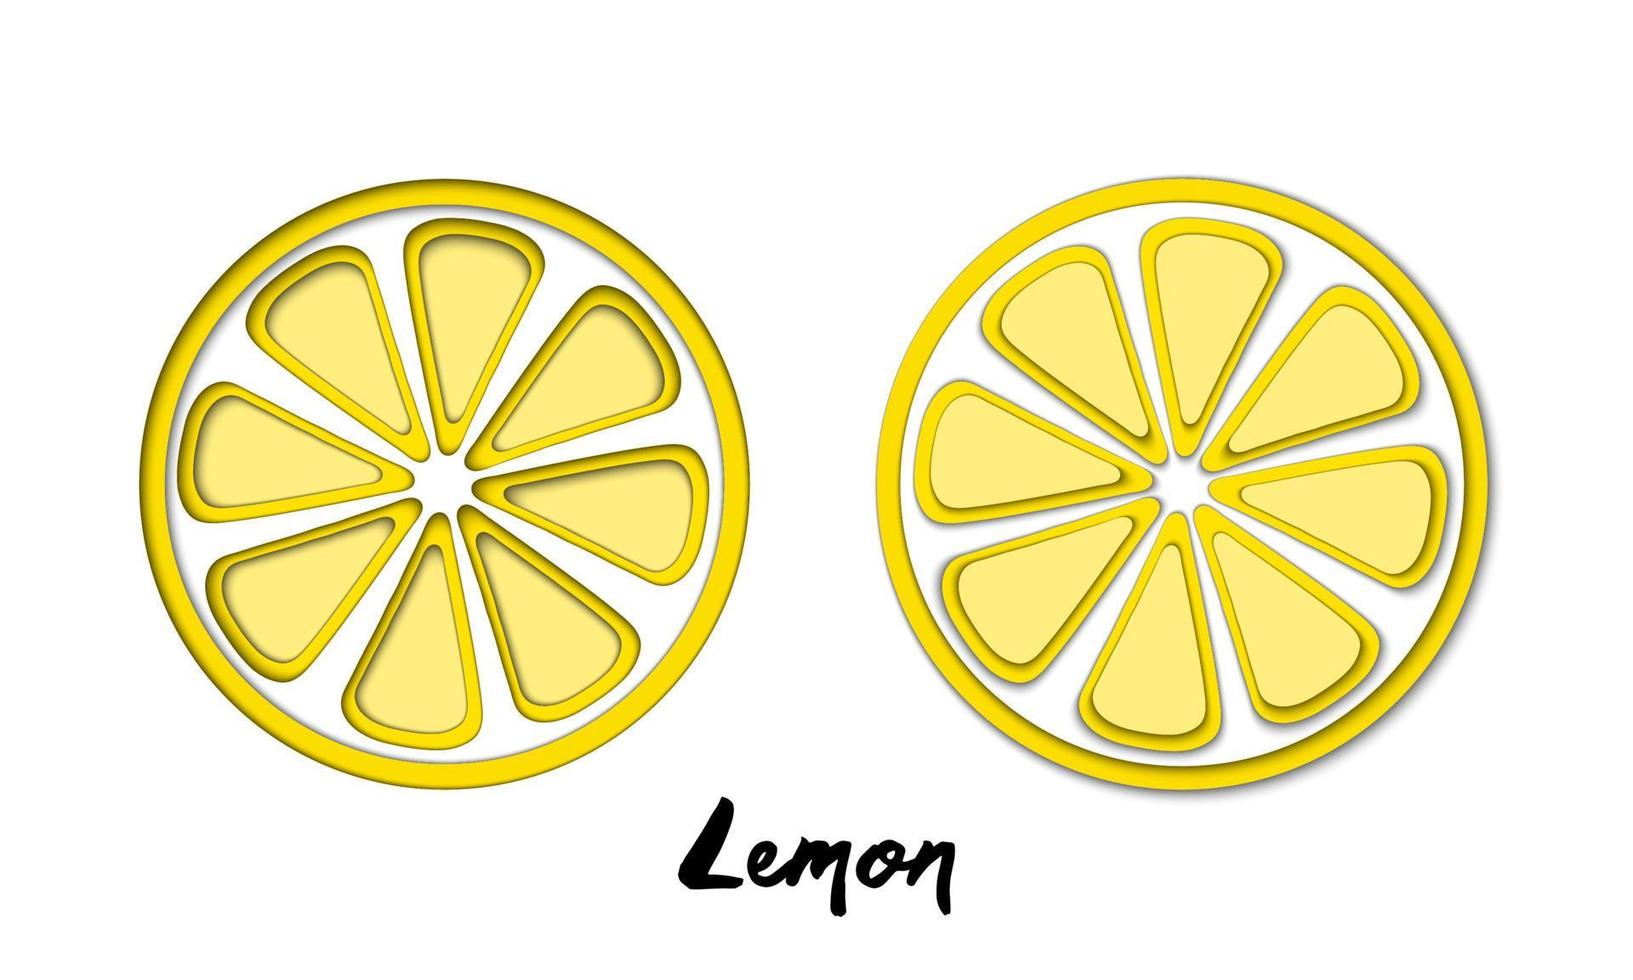 ensemble d'images vectorielles de citron jaune découpé en papier, formes découpées. Style d'art papier abstrait 3d, conception de concept d'origami, emballage alimentaire, publicité, désintoxication, cosmétiques, alimentation saine. vecteur